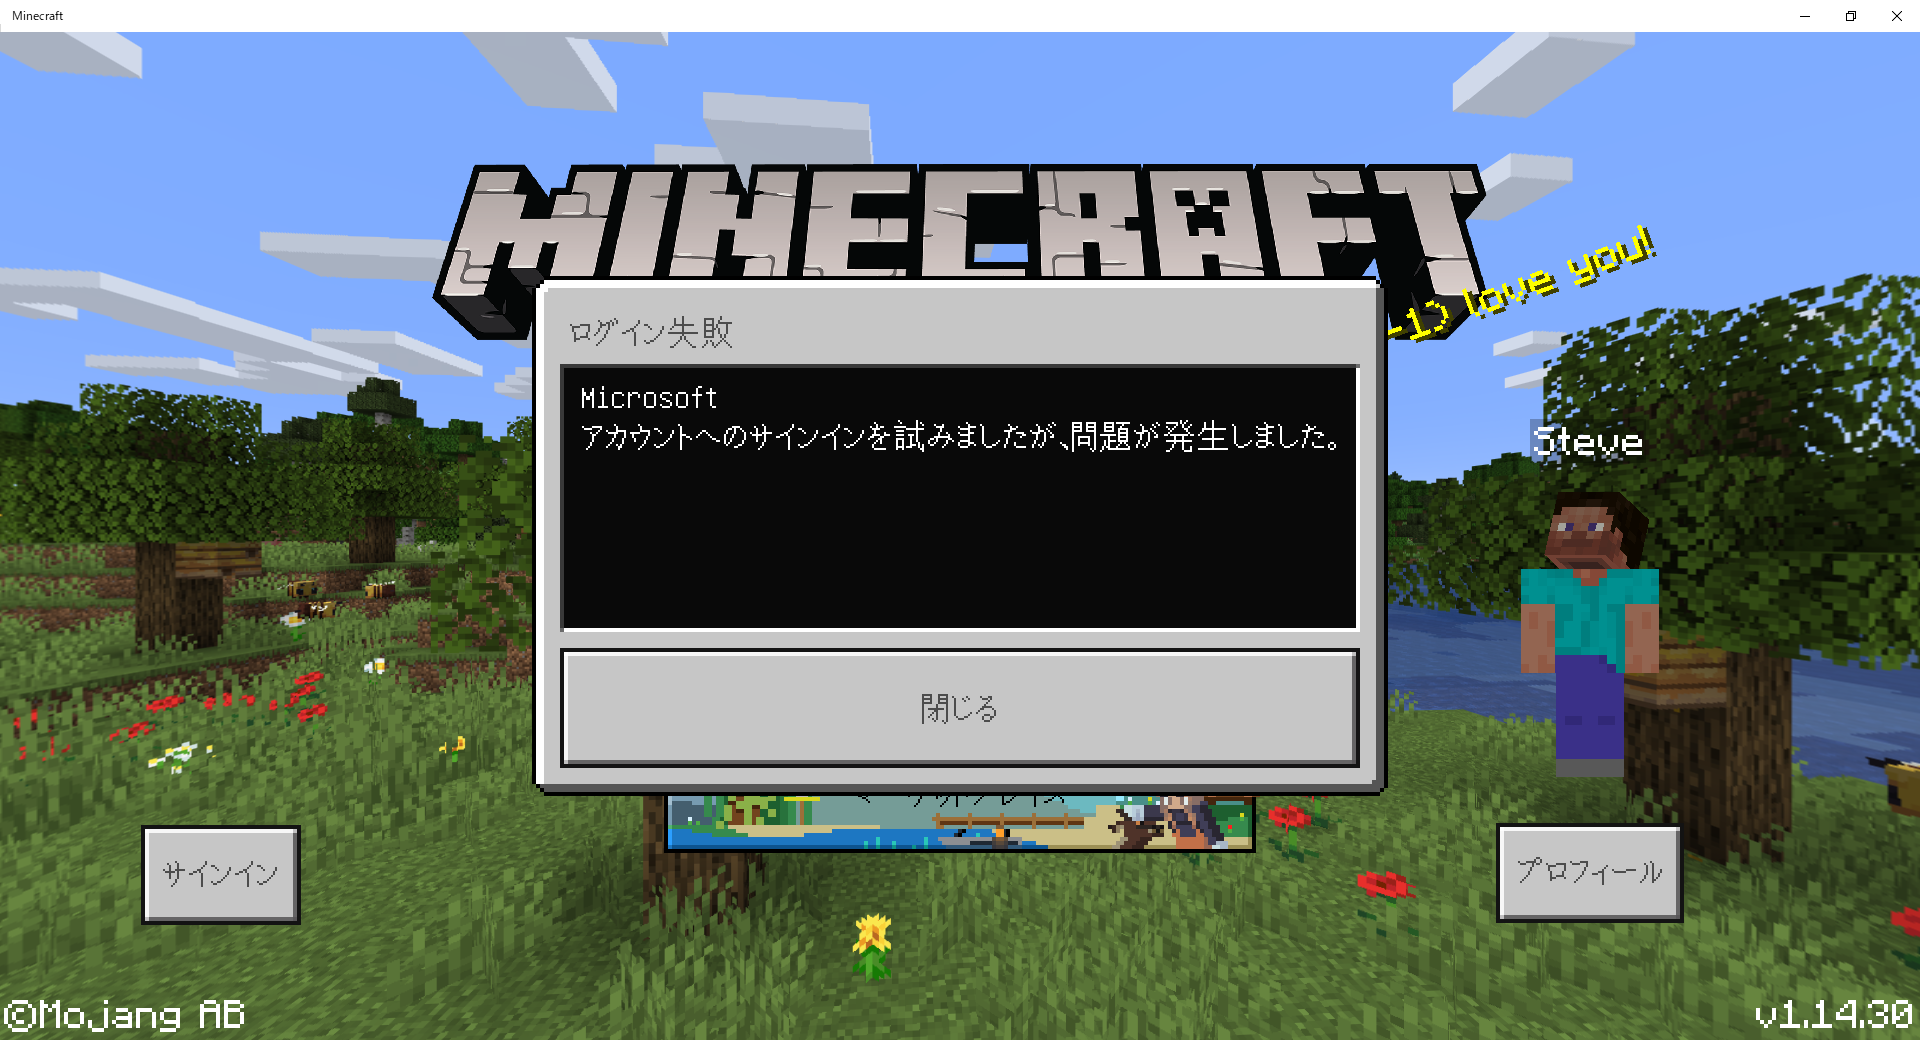 Minecraftにログインできない Microsoft Community